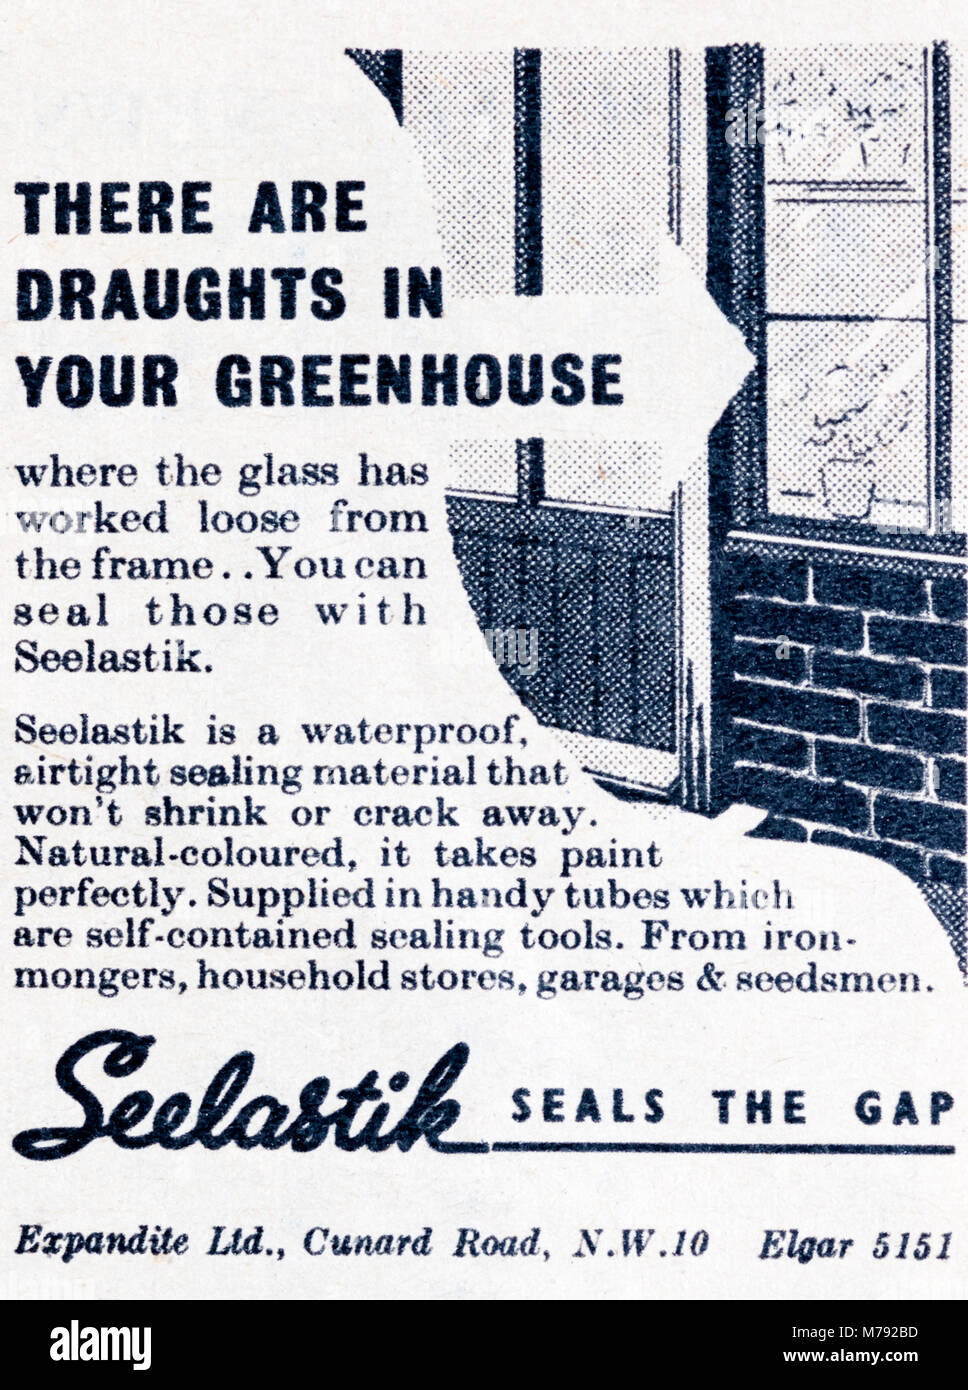 Una revista de 1950 Anuncio publicitario invernadero Seelastik sellador. Foto de stock